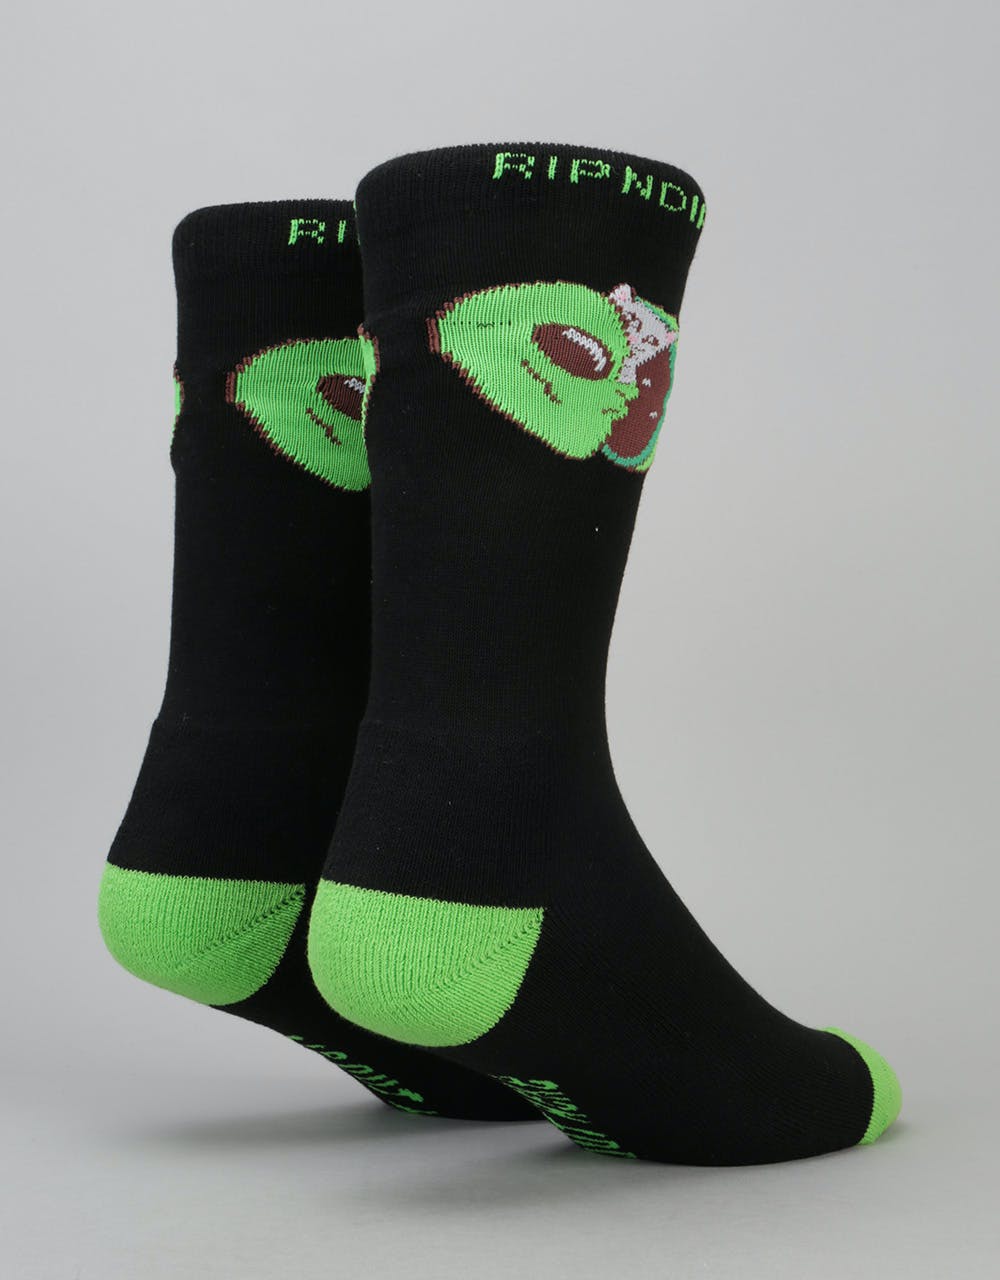 RIPNDIP In My Mind Socks - Black/Green